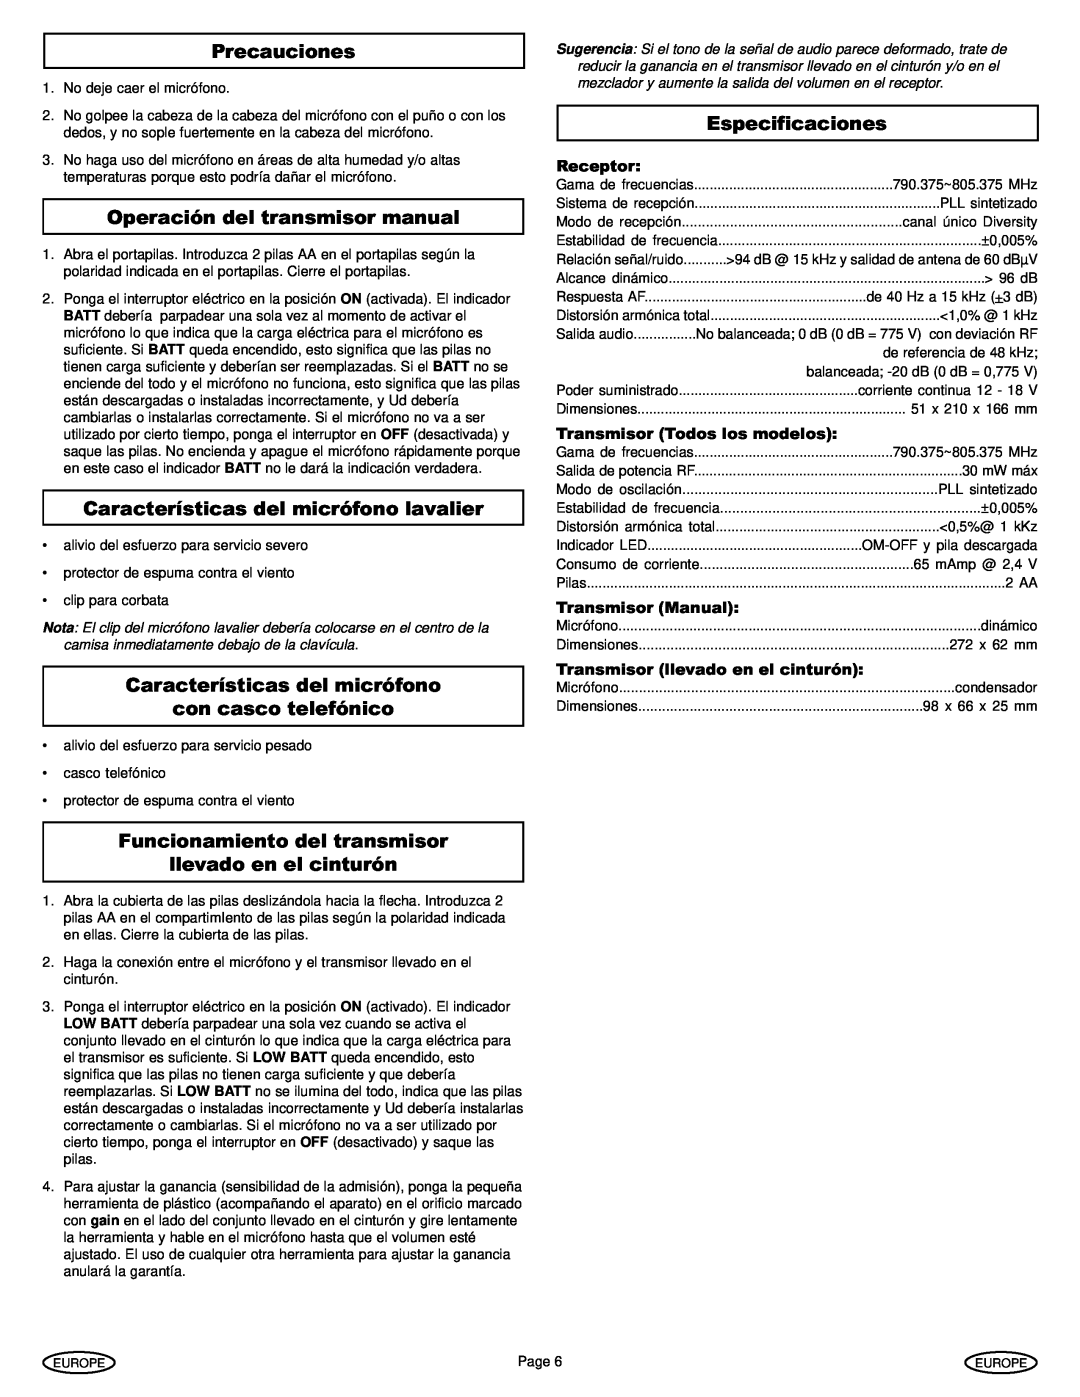 Gemini UX-1610 Precauciones, Operación del transmisor manual, Características del micrófono lavalier, Especificaciones 